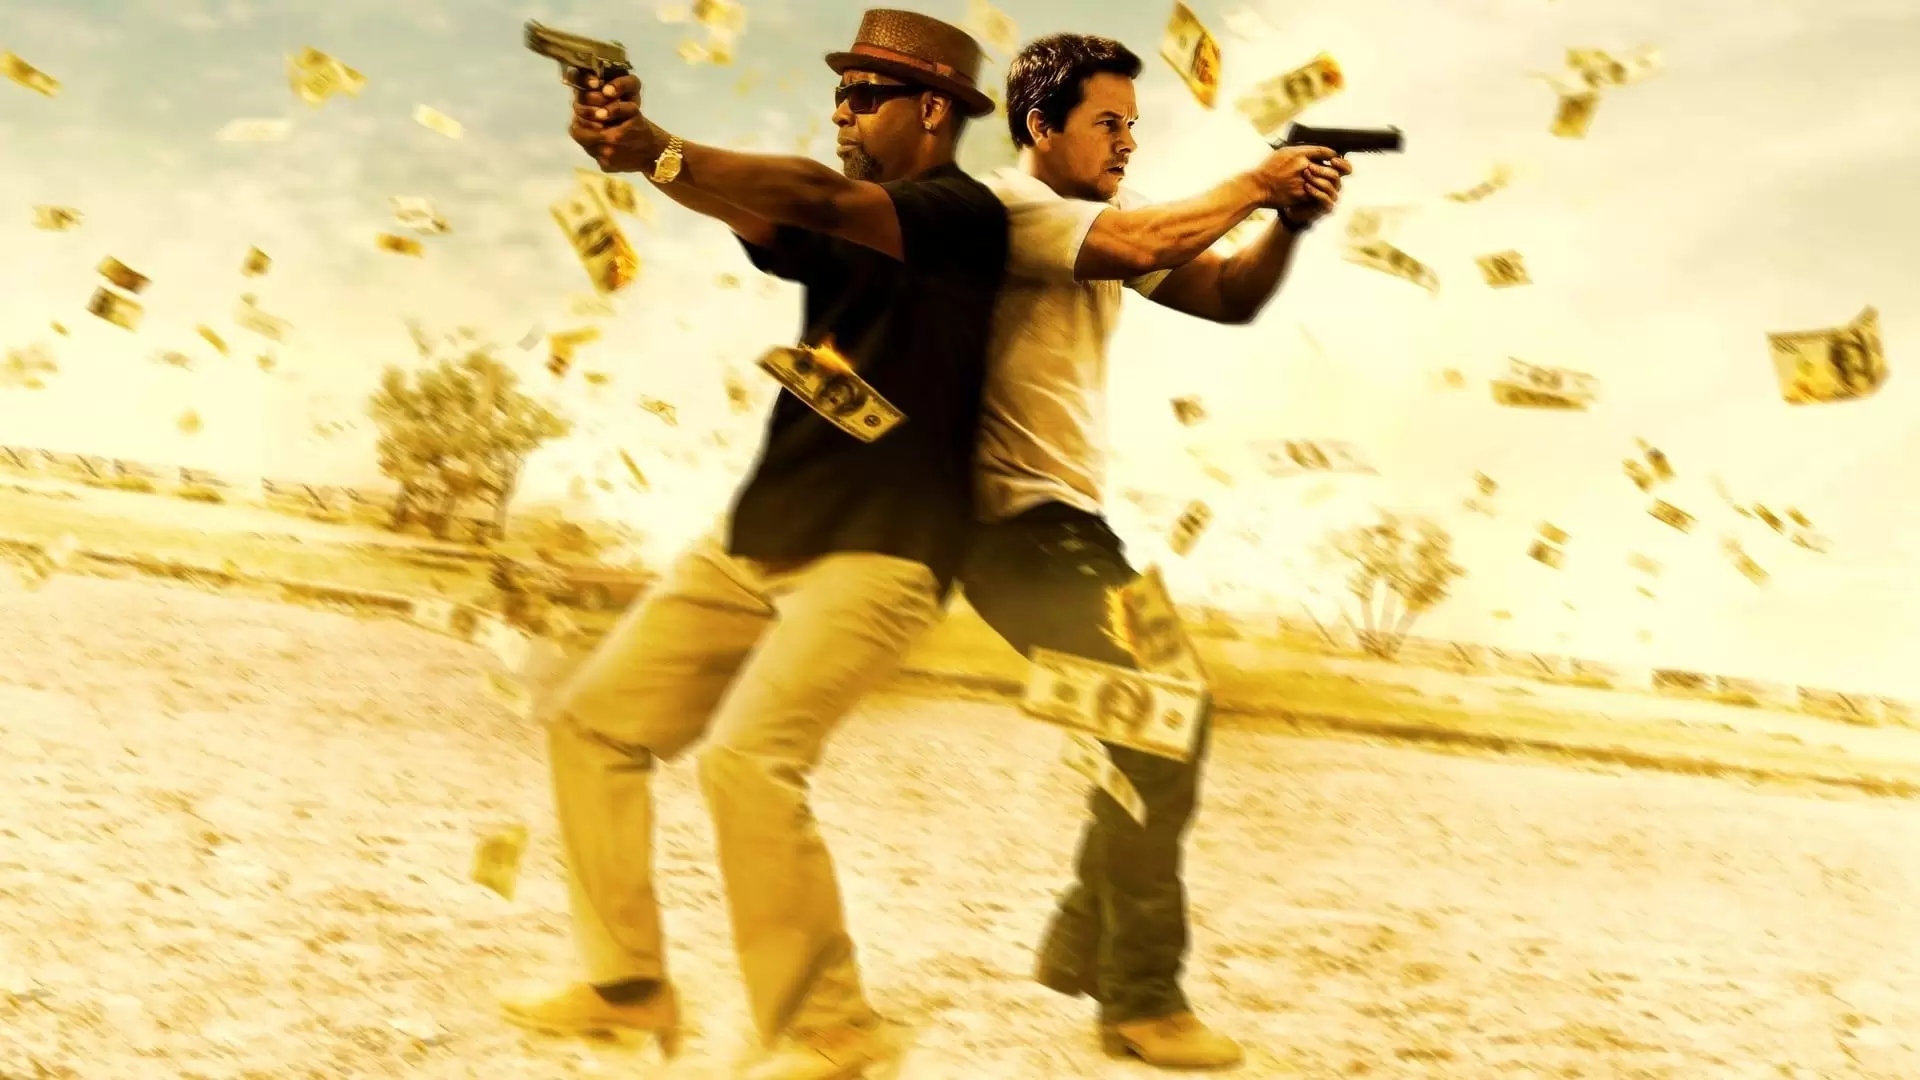 دانلود فیلم 2 Guns 2013 (دو اسلحه) با زیرنویس فارسی و تماشای آنلاین